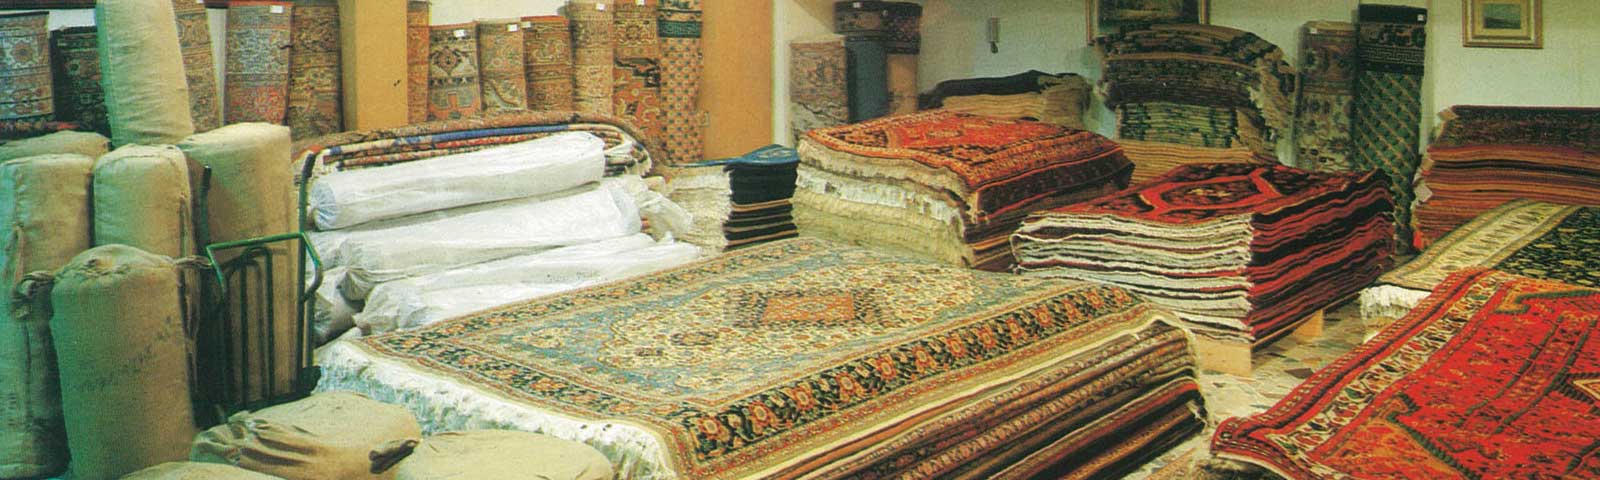 tappeti persiani orientali vendita lavaggio restauro custodia milano